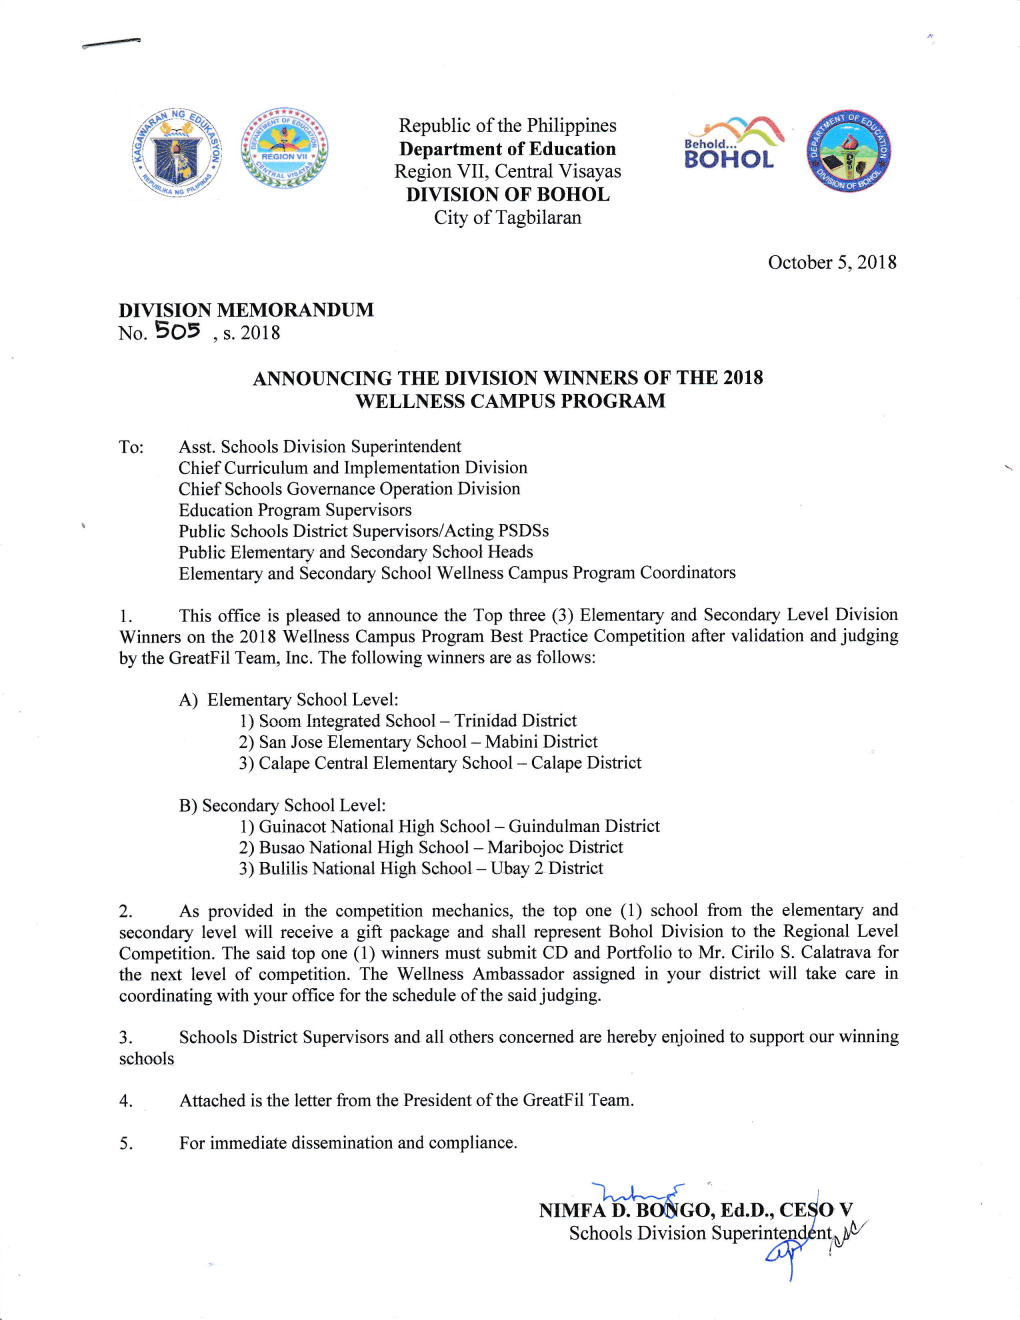 Artment of Education Region VII, Central Visayas DIVISION of BOHOL City of Tagbilaran